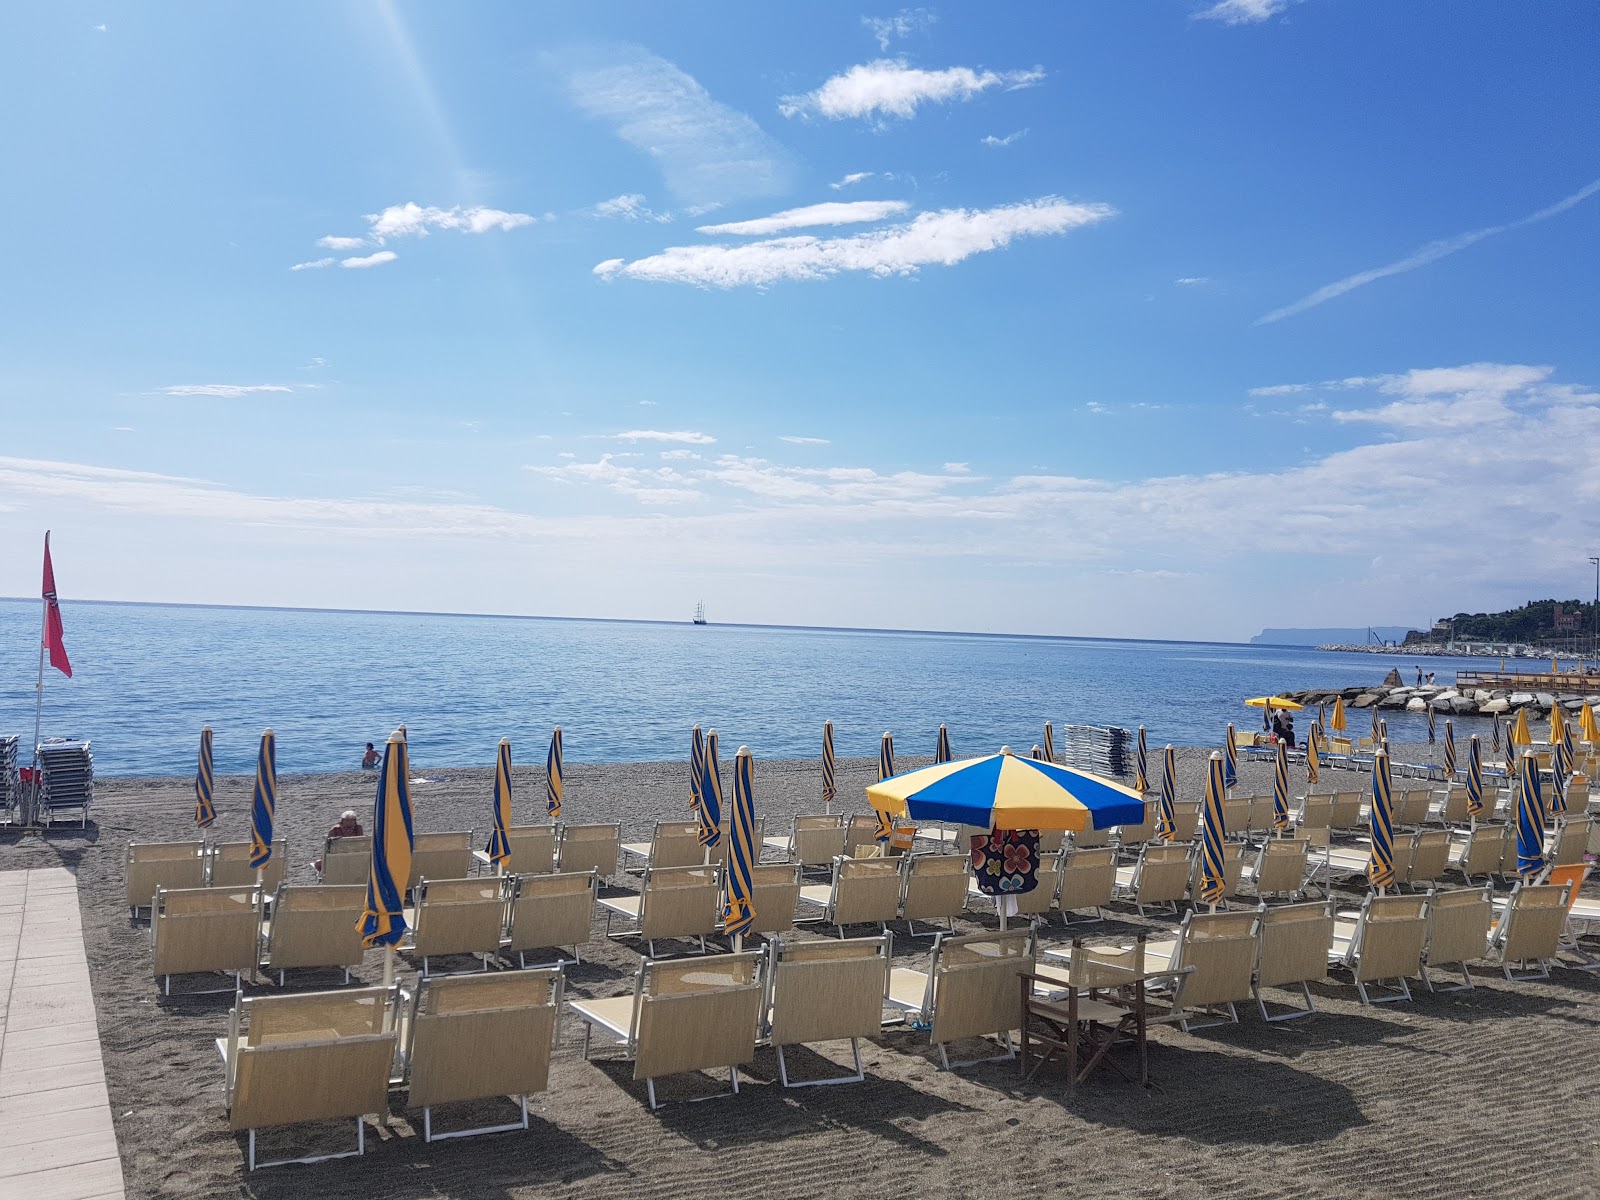 Foto von Spiaggia Varazze und die siedlung